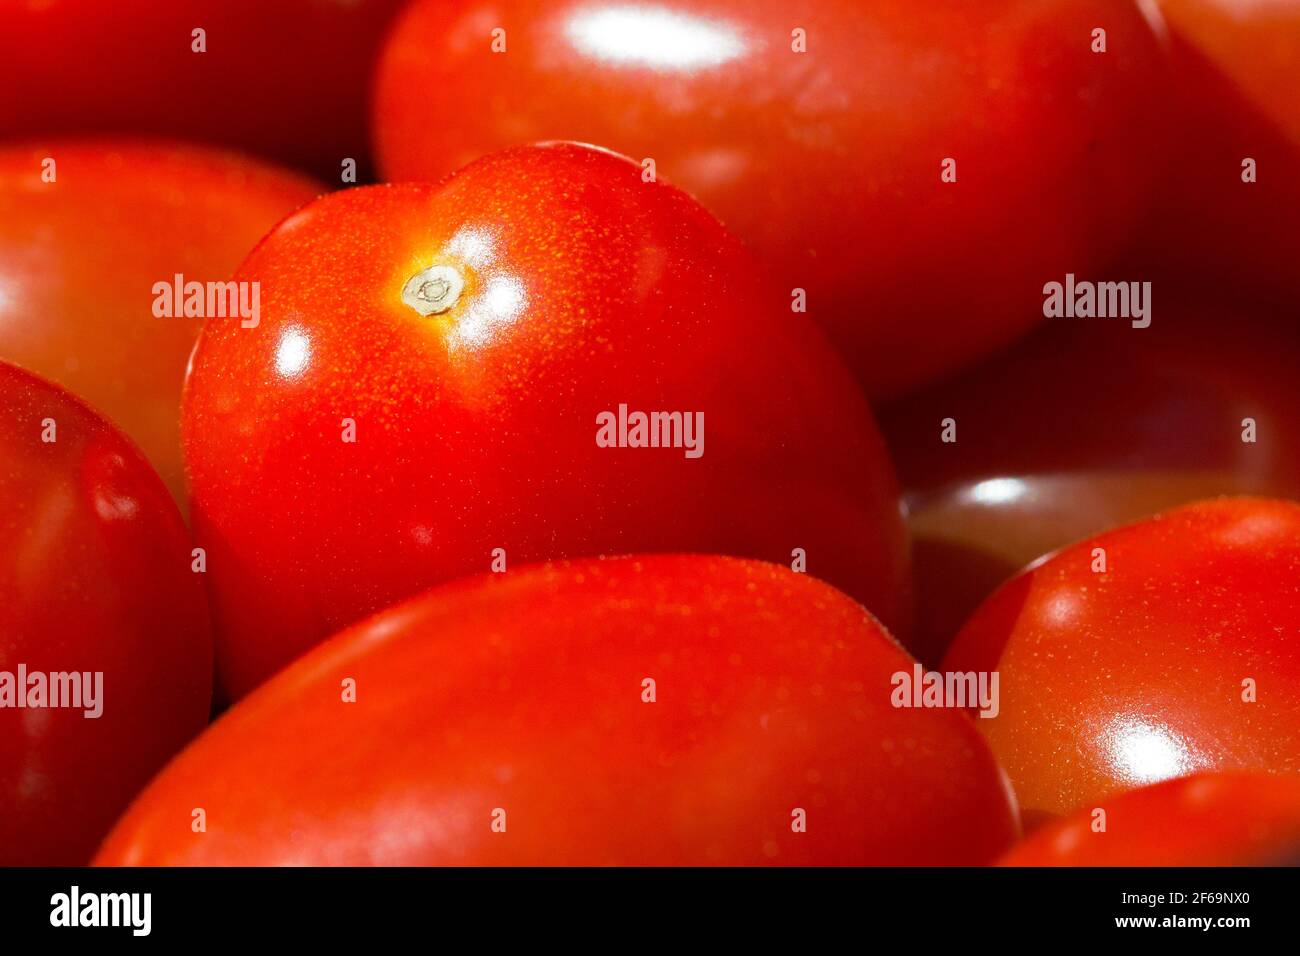 Primo piano immagine di pomodori rossi maturi e vividi in una ciotola in cucina Foto Stock